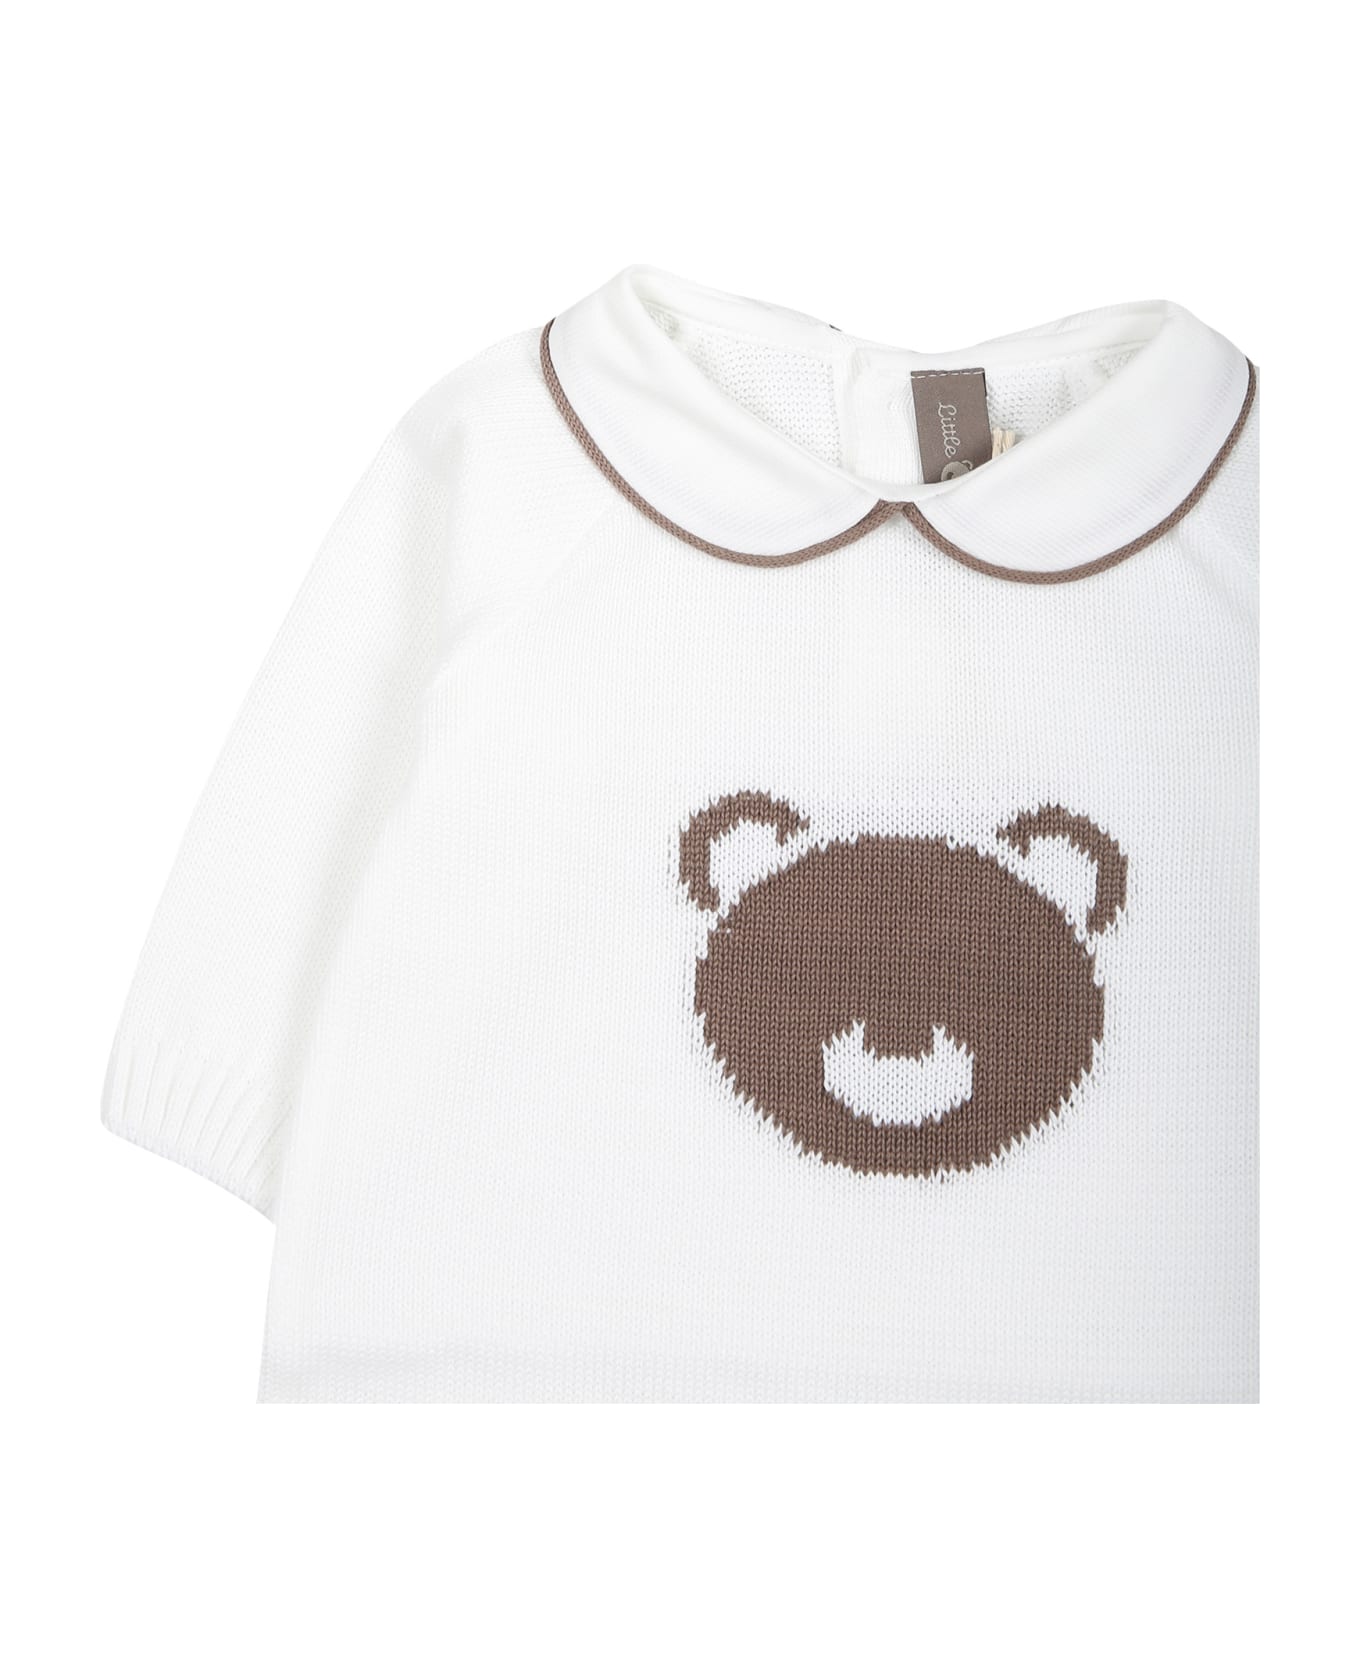 Little Bear White Babygrown For Baby Kids - White